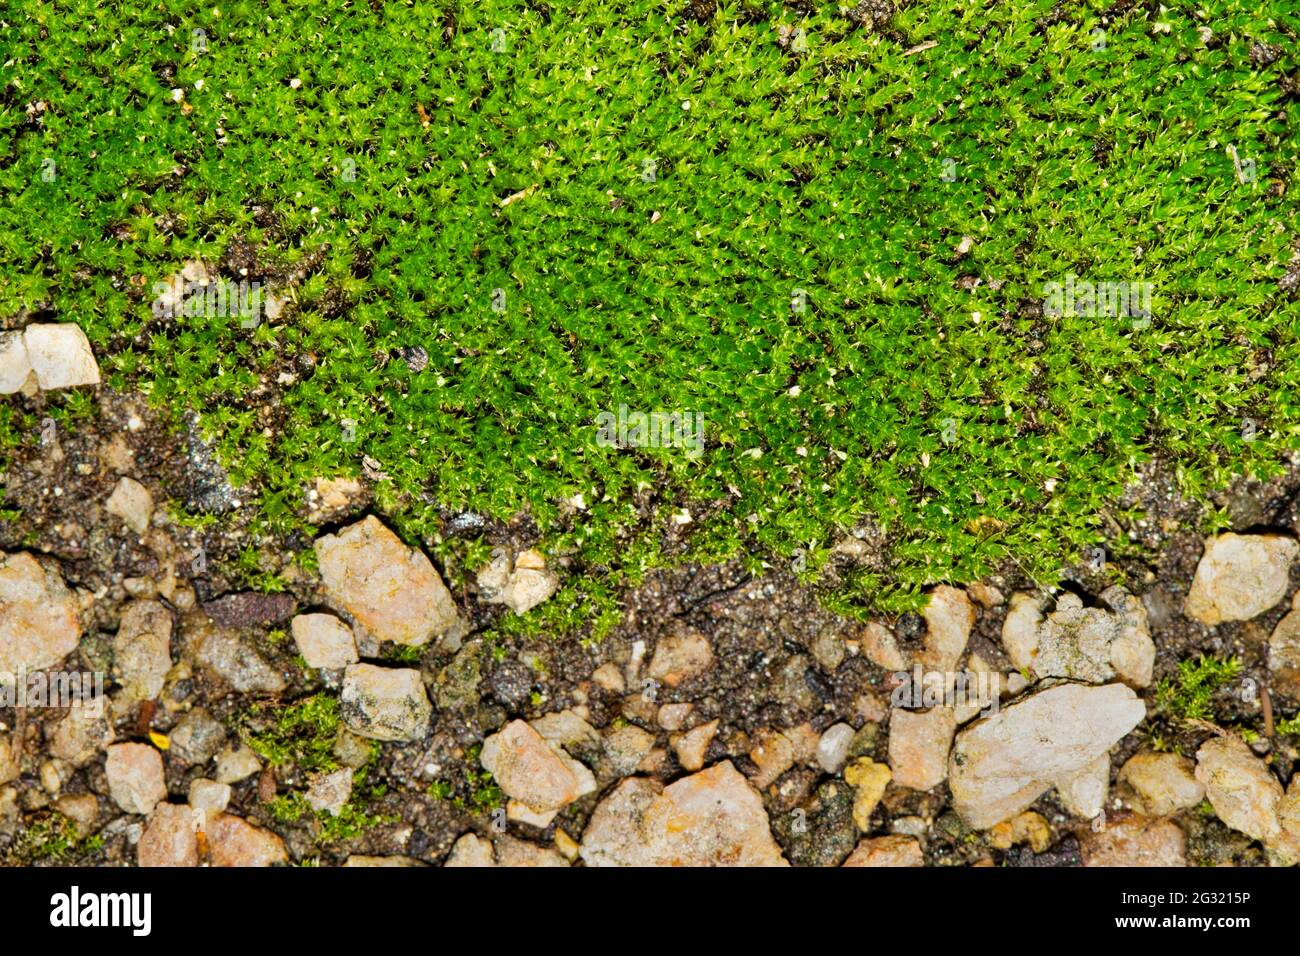 La gota verde de musgo (Bryophyta) crece alrededor de pequeñas piedras con separación y enfoque selectivo. Foto de stock